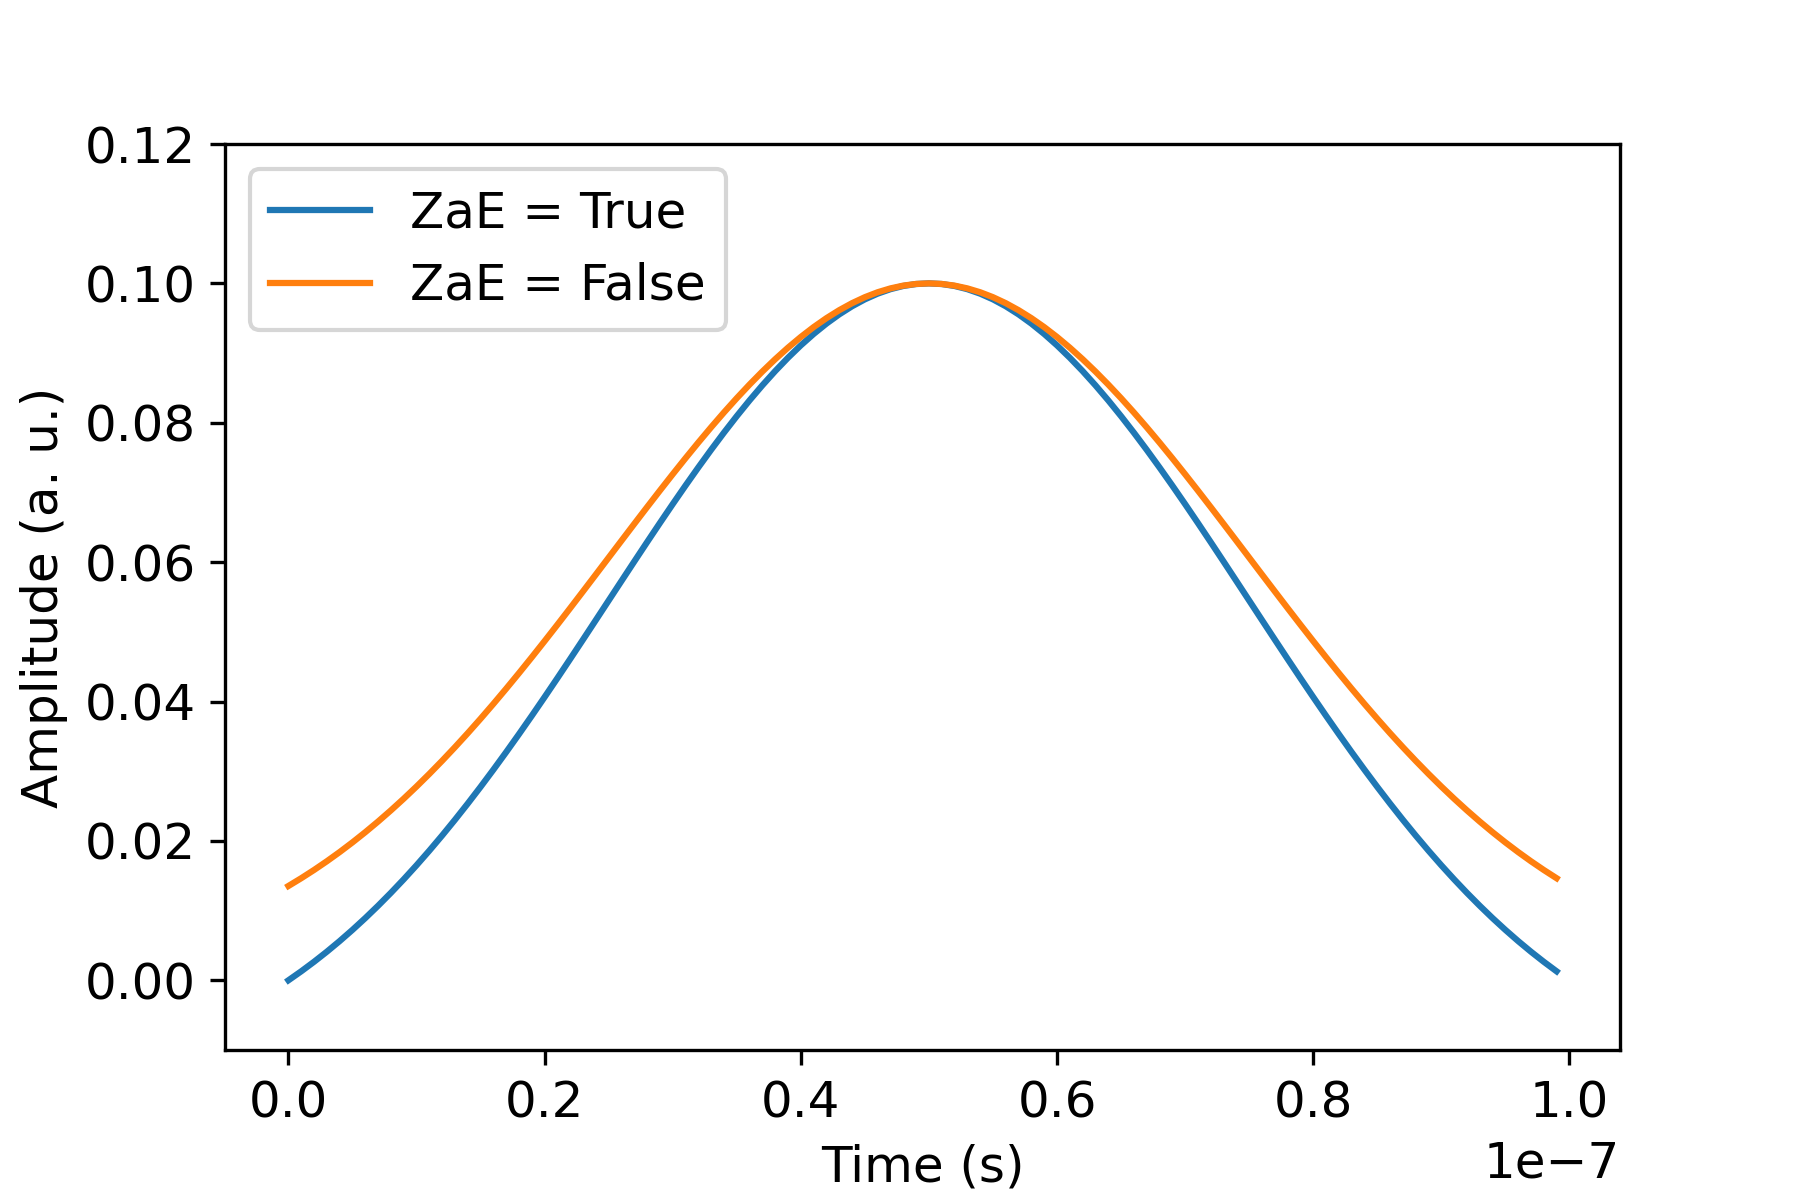 Grafik yang menunjukkan amplitudo dari waktu ke waktu untuk dua kasus: ZaE = Benar (kurva bawah) dan ZaE = Salah (kurva atas). Kurva memiliki bentuk lonceng memuncak sekitar 0,5 detik dengan amplitudo 0,10 a. u..